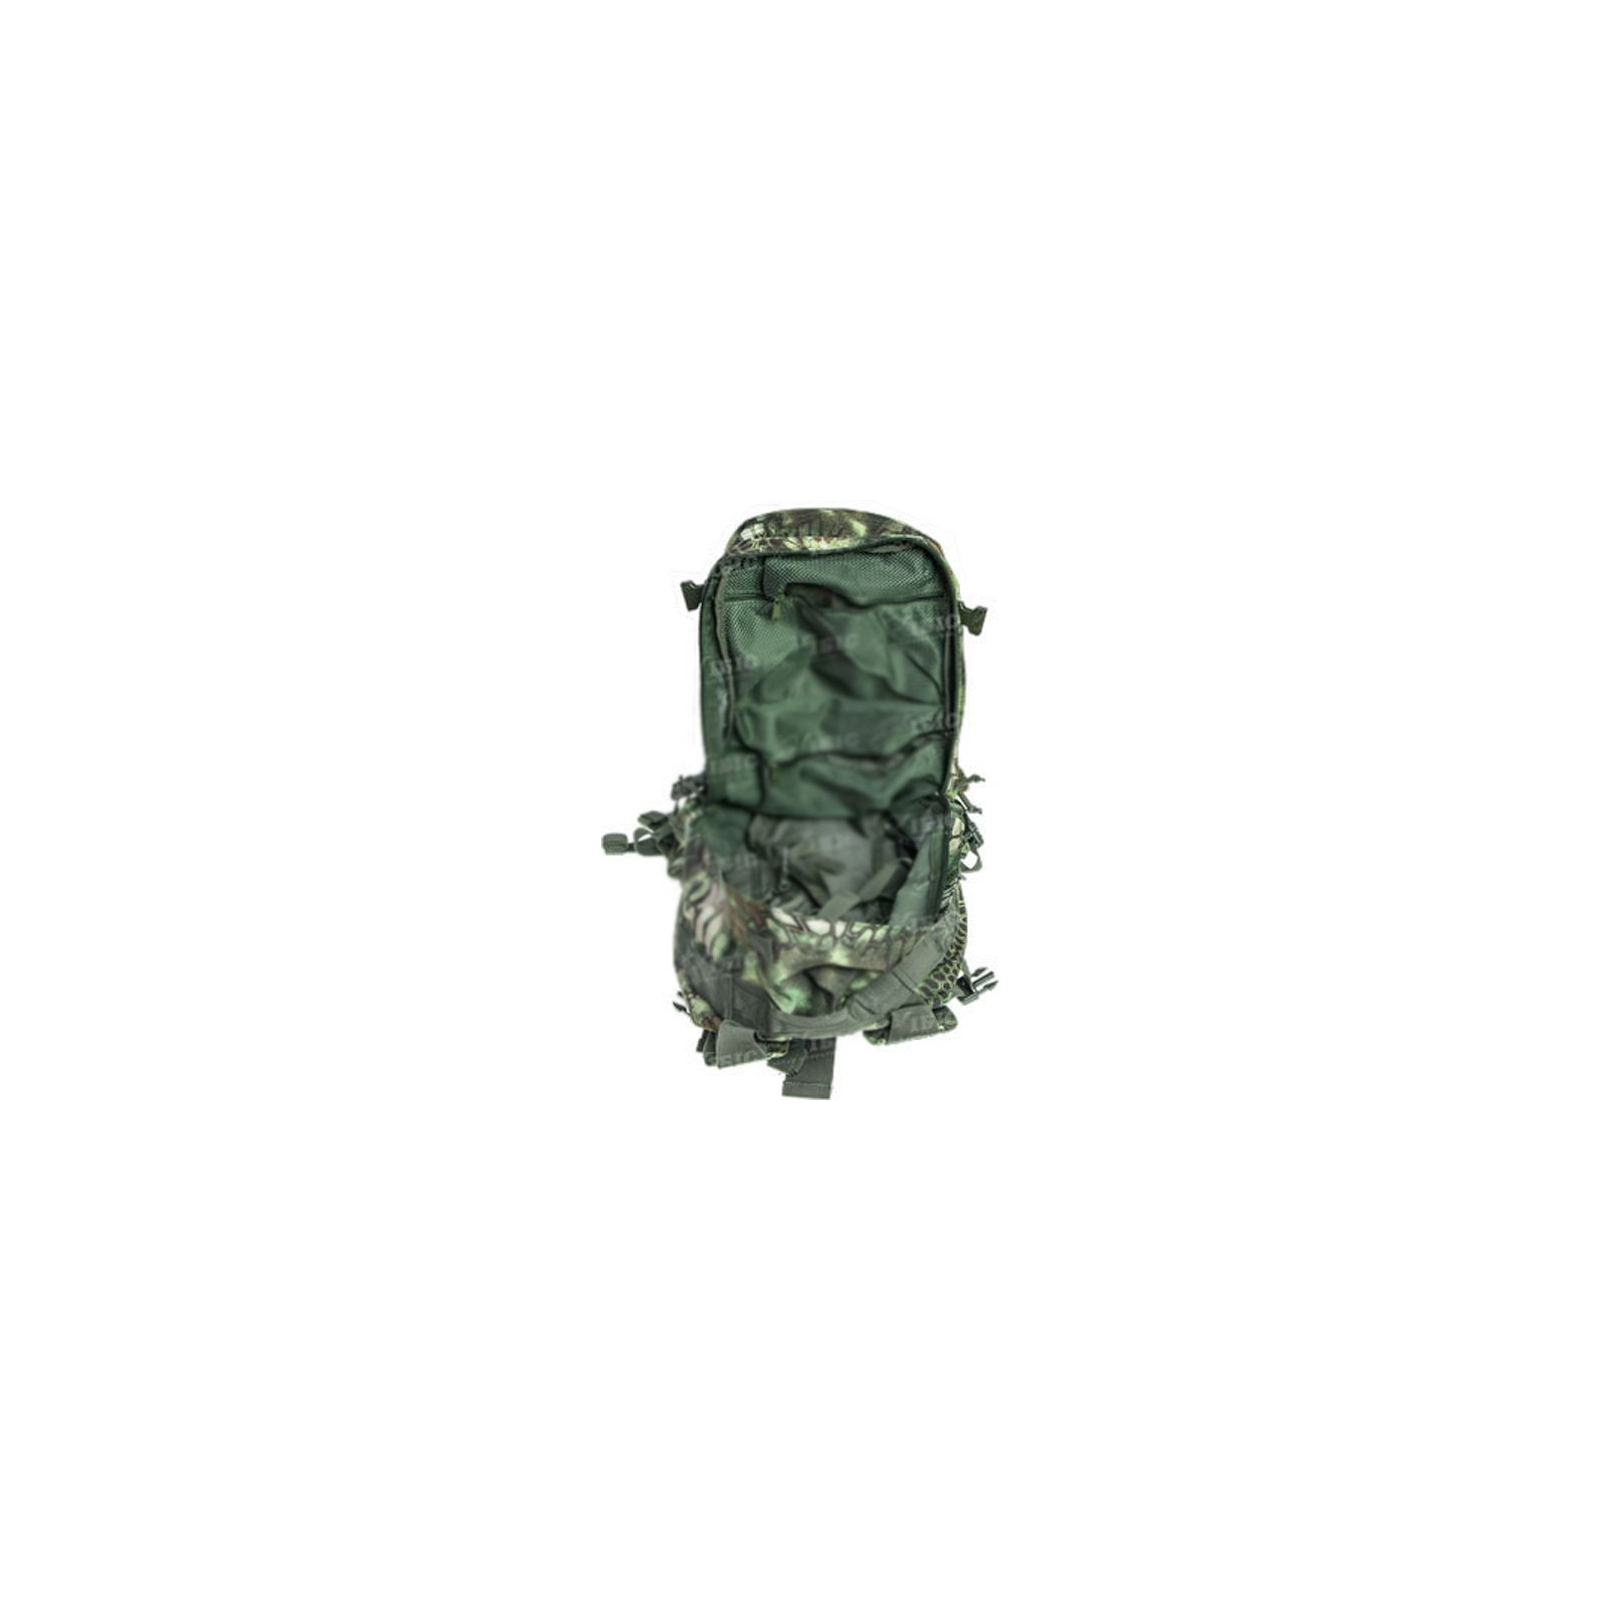 Рюкзак туристический Skif Tac тактический 3-х дневный 45 литров kryptek green (2795.02.55) изображение 5